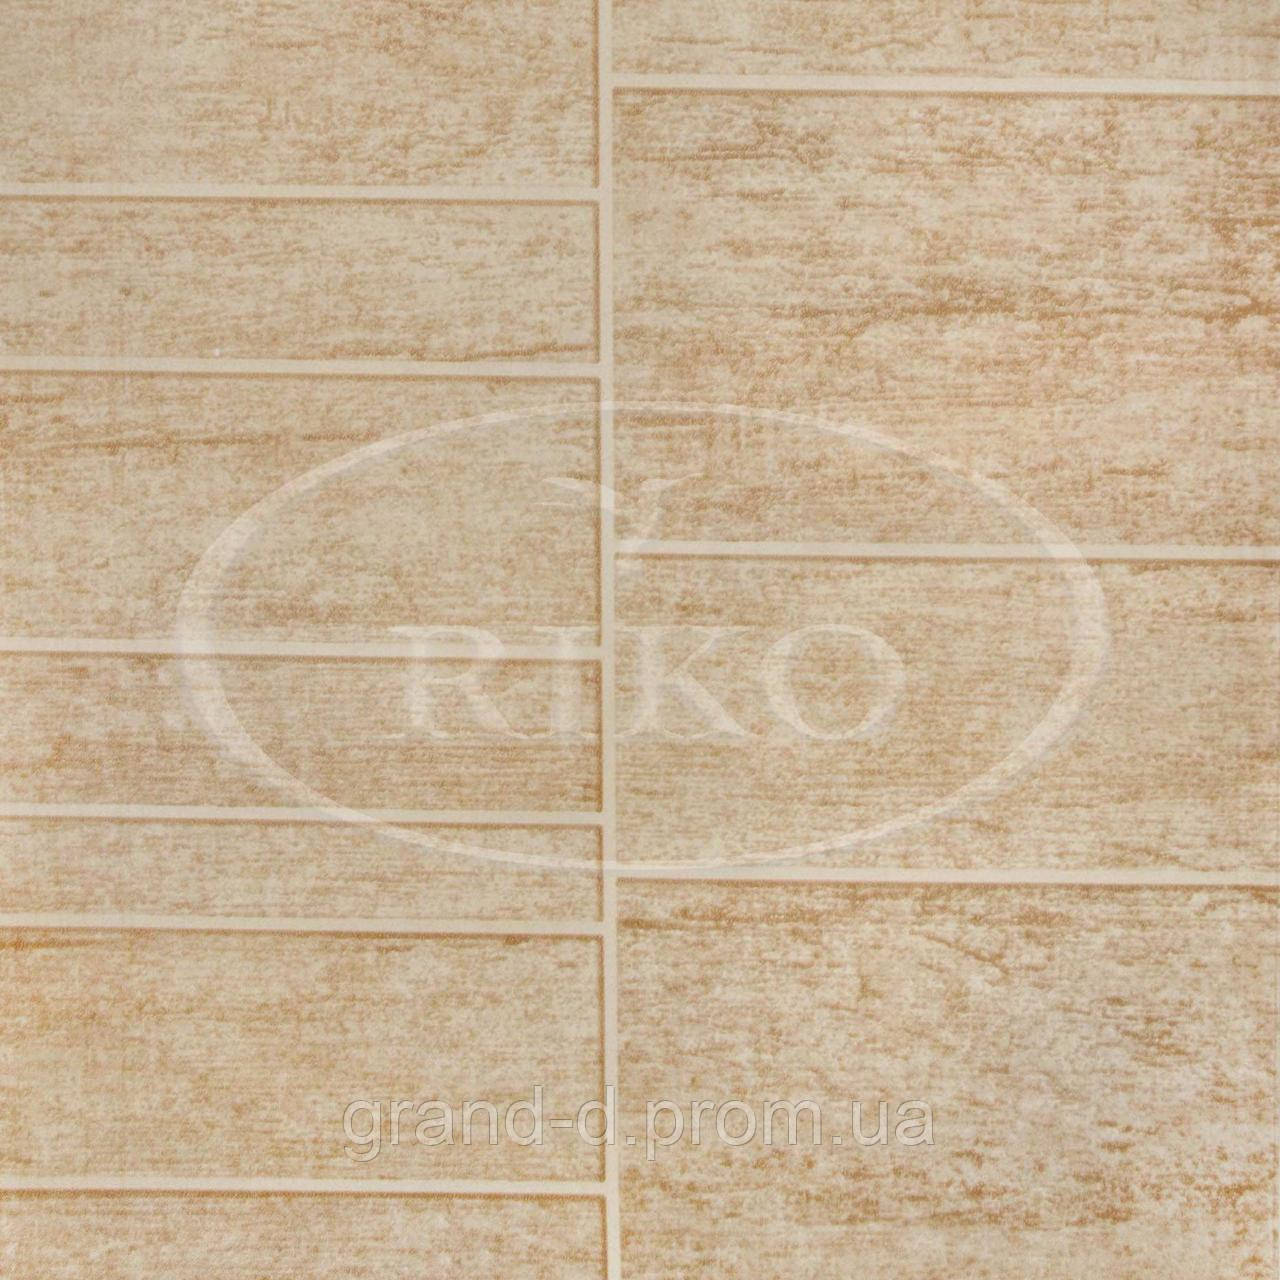 Пластикові декоративні панелі ПВХ Ріко(Riko) 250*8*3000мм Керамо бежевий з Термопереводом безшовні